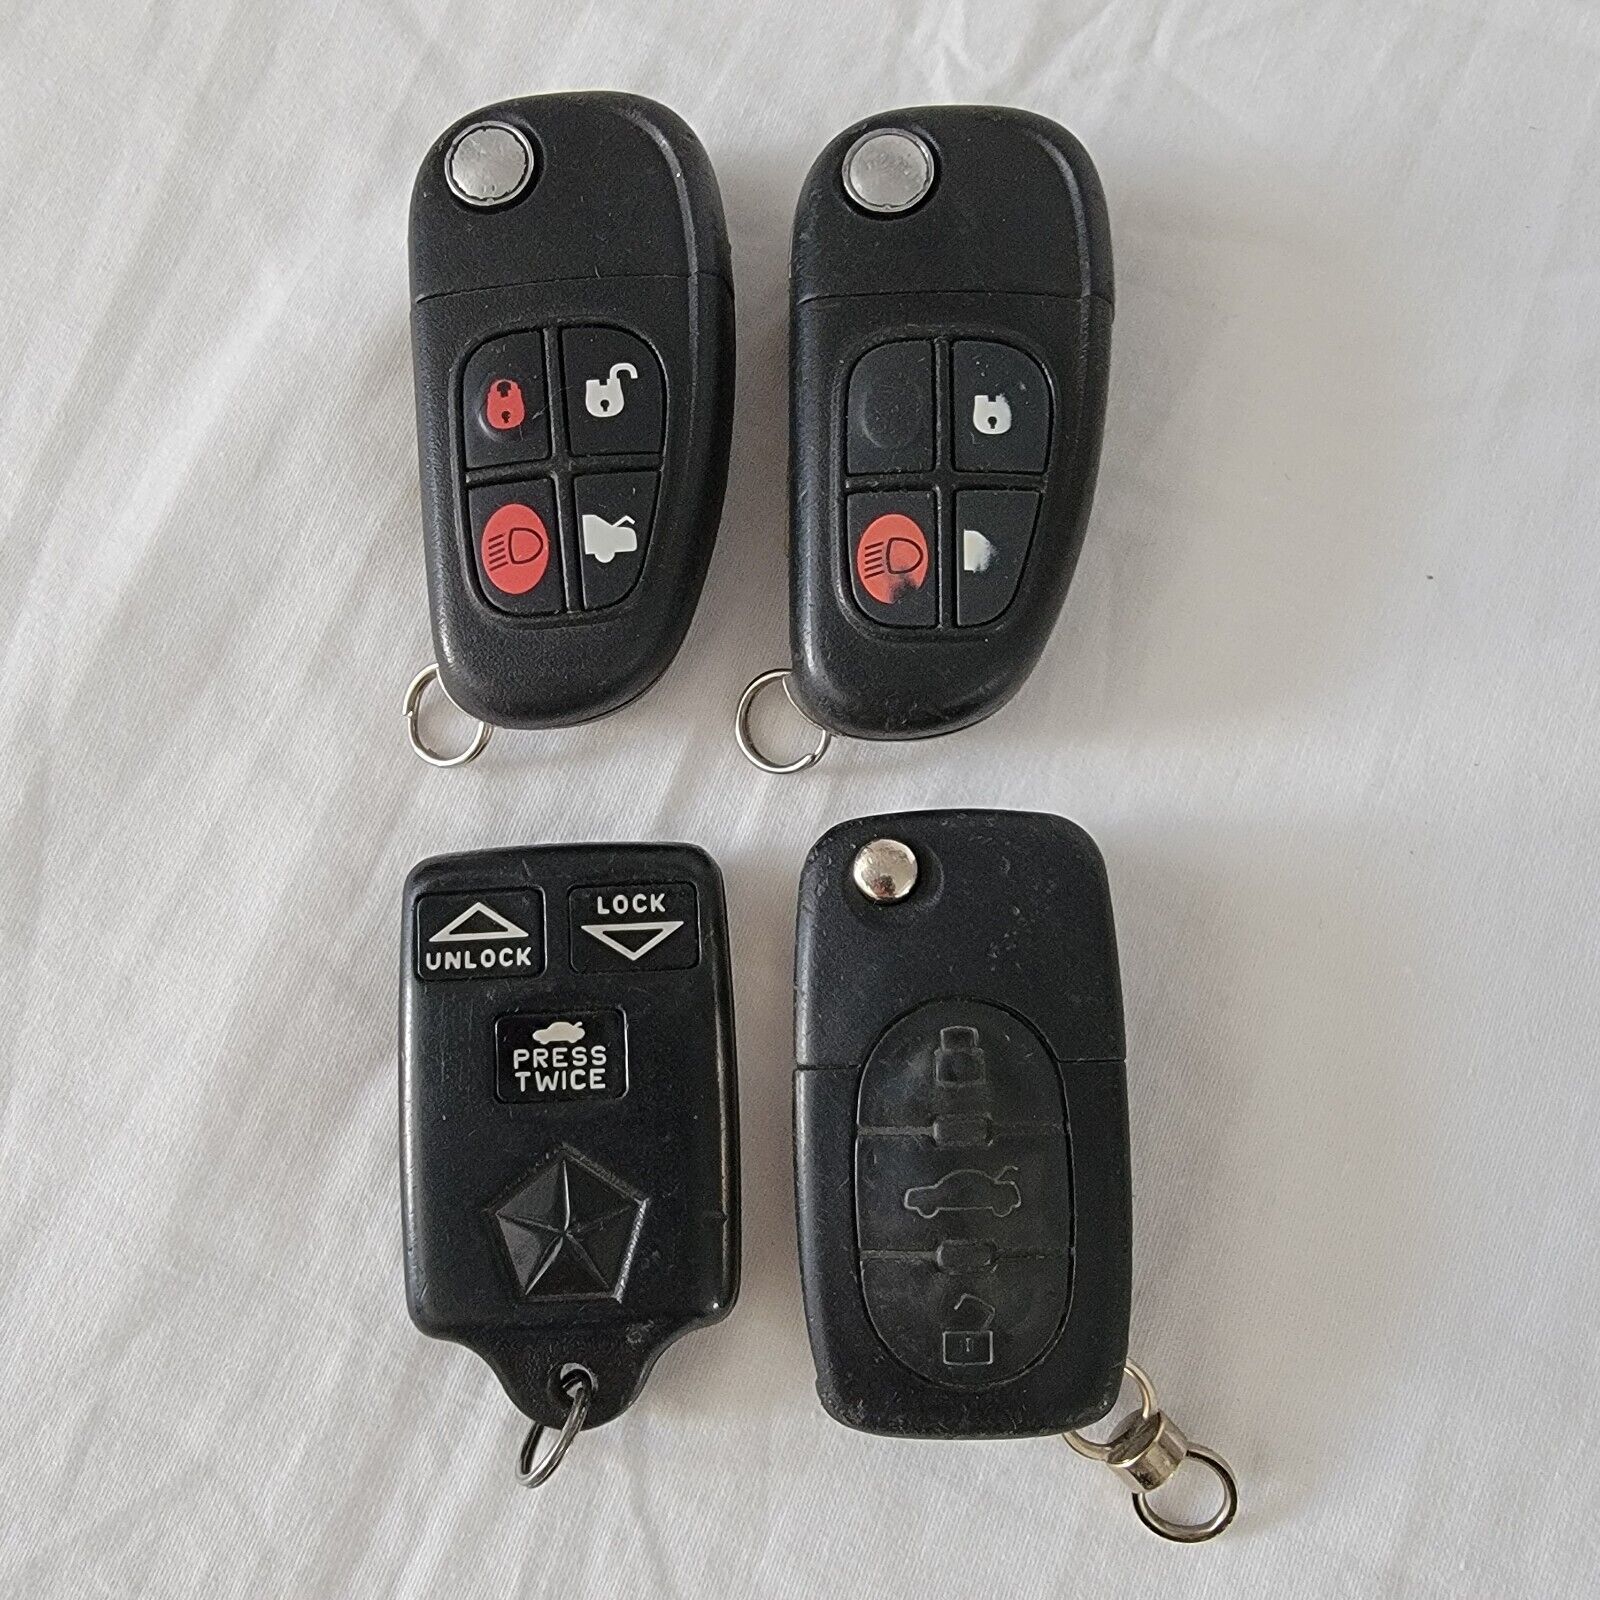 4 Remote Entry Car Key Fobs